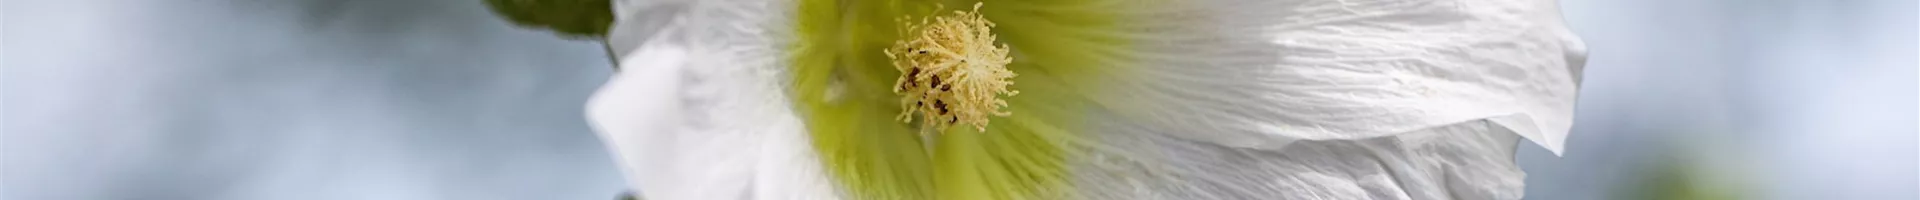 Stockrose - Einpflanzen im Garten (Thumbnail).jpg